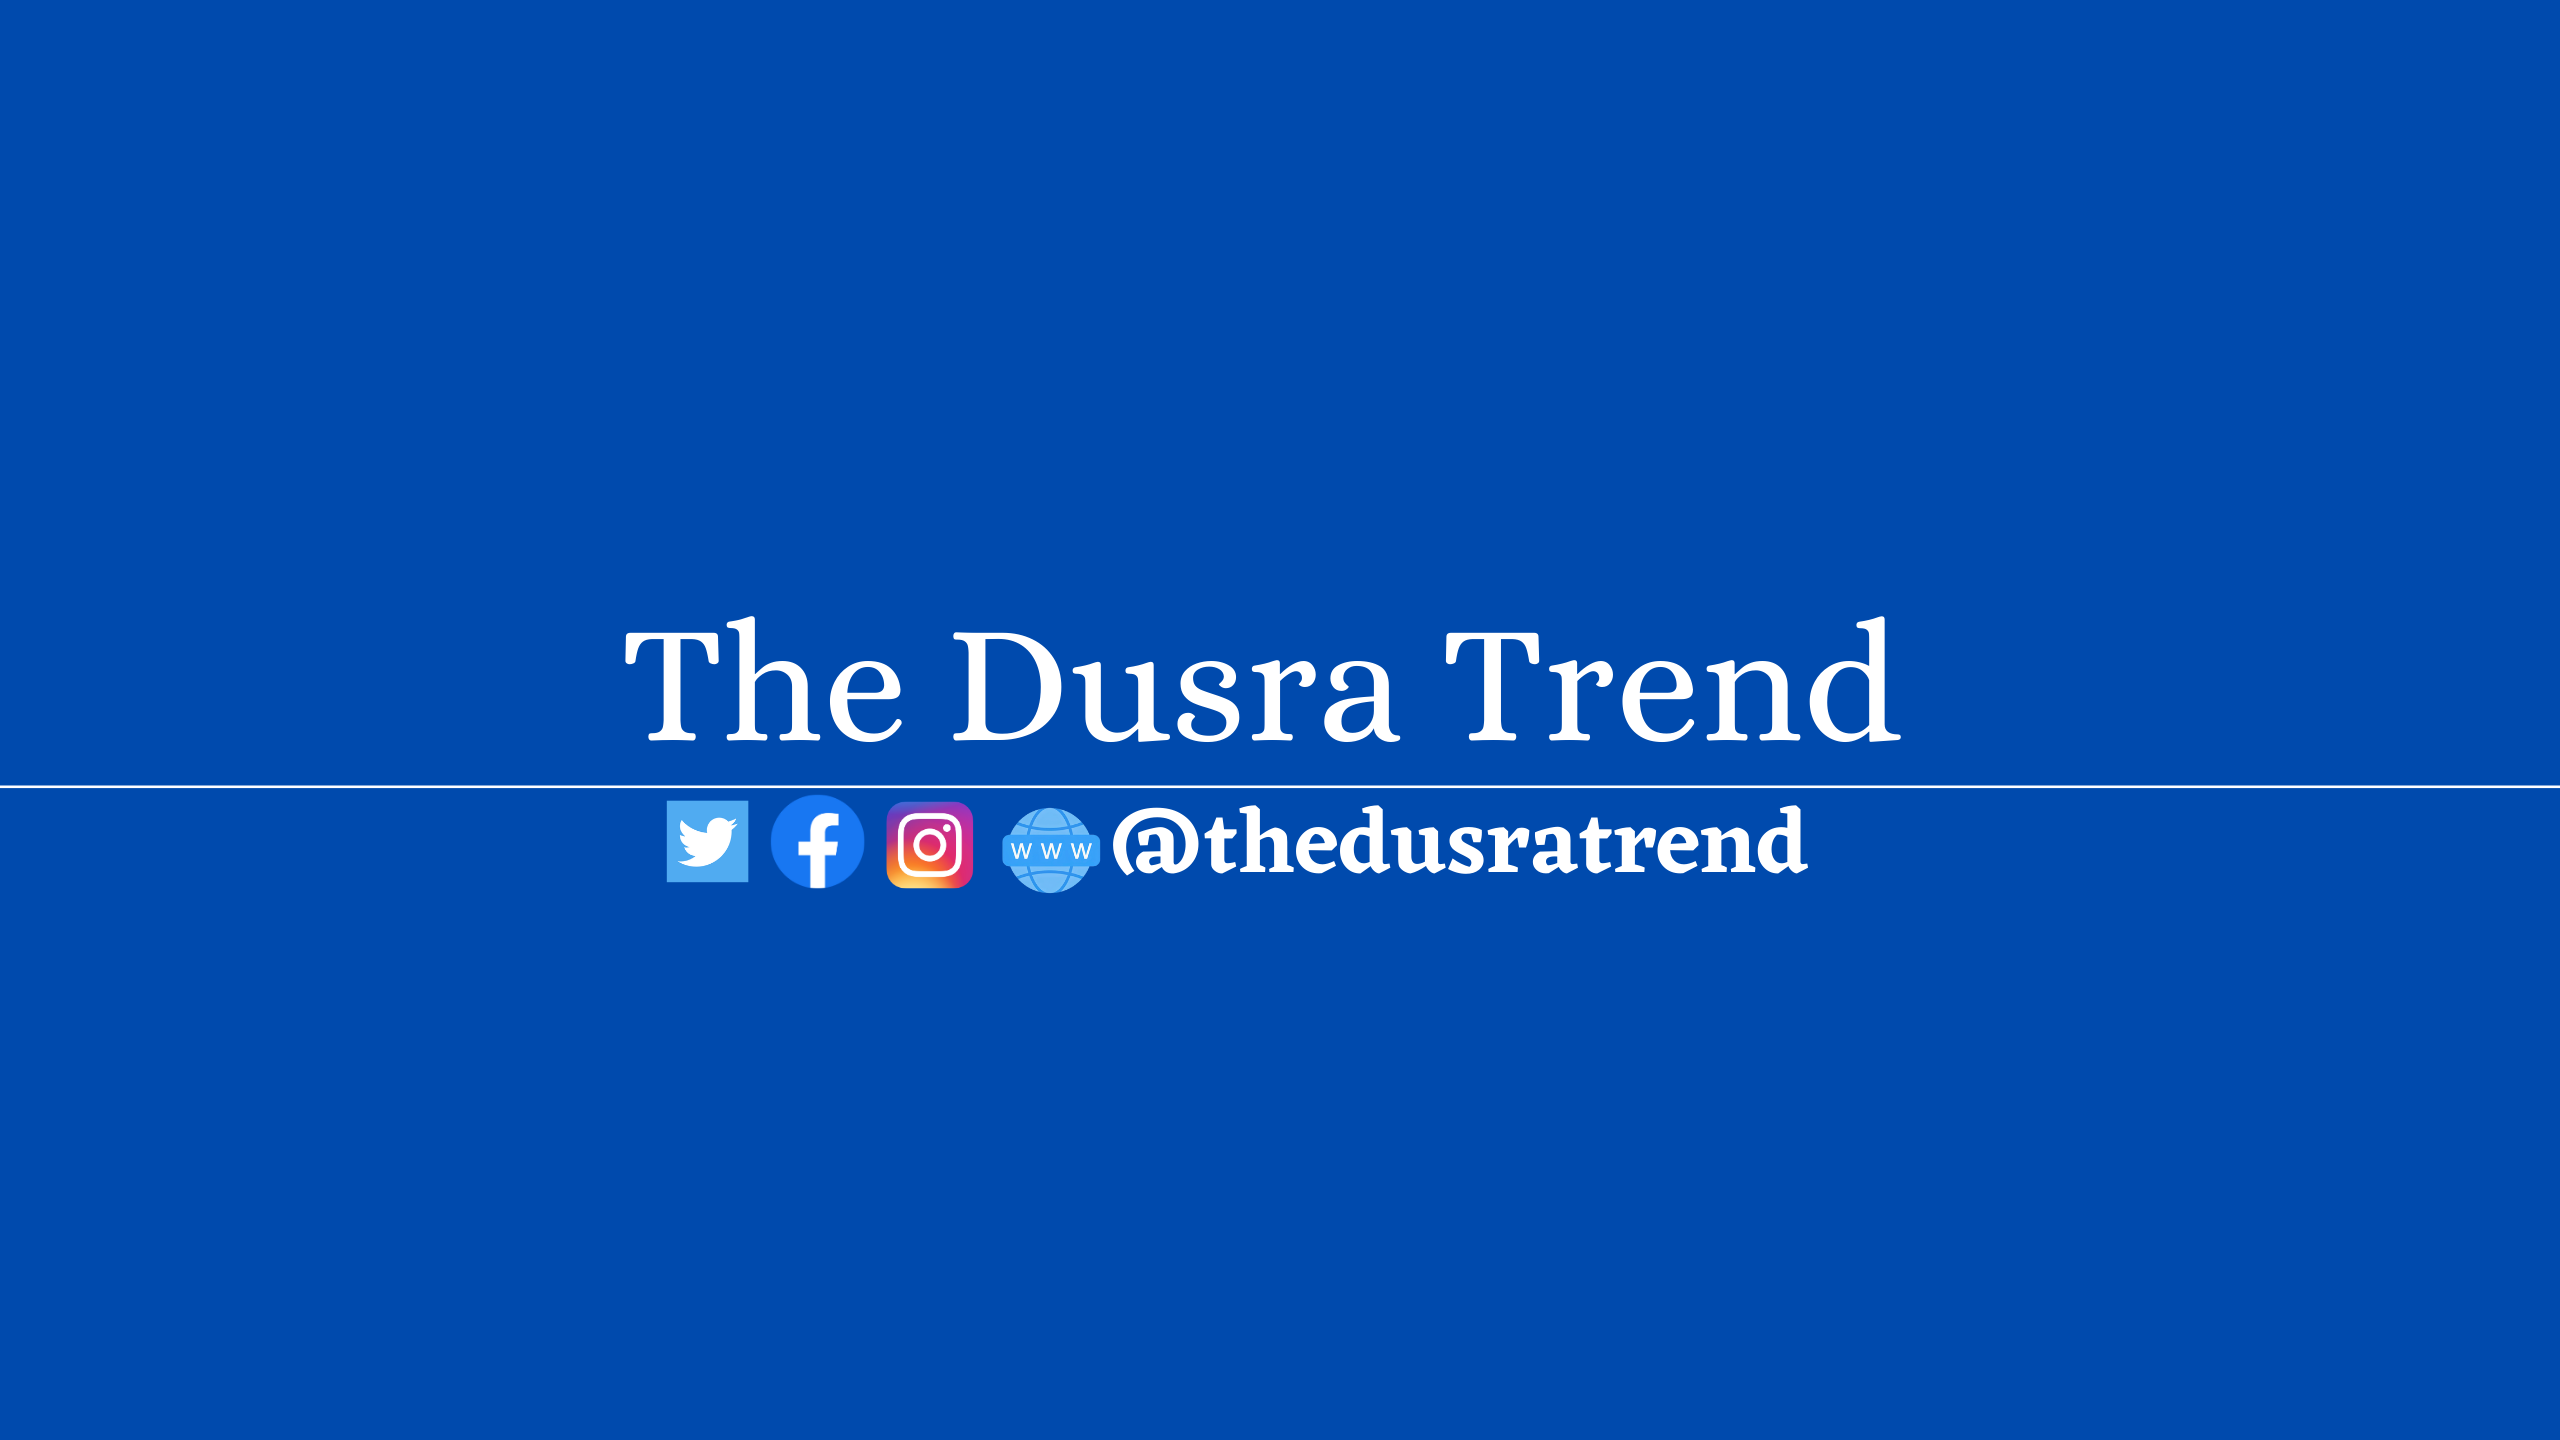 The Dusra Trend